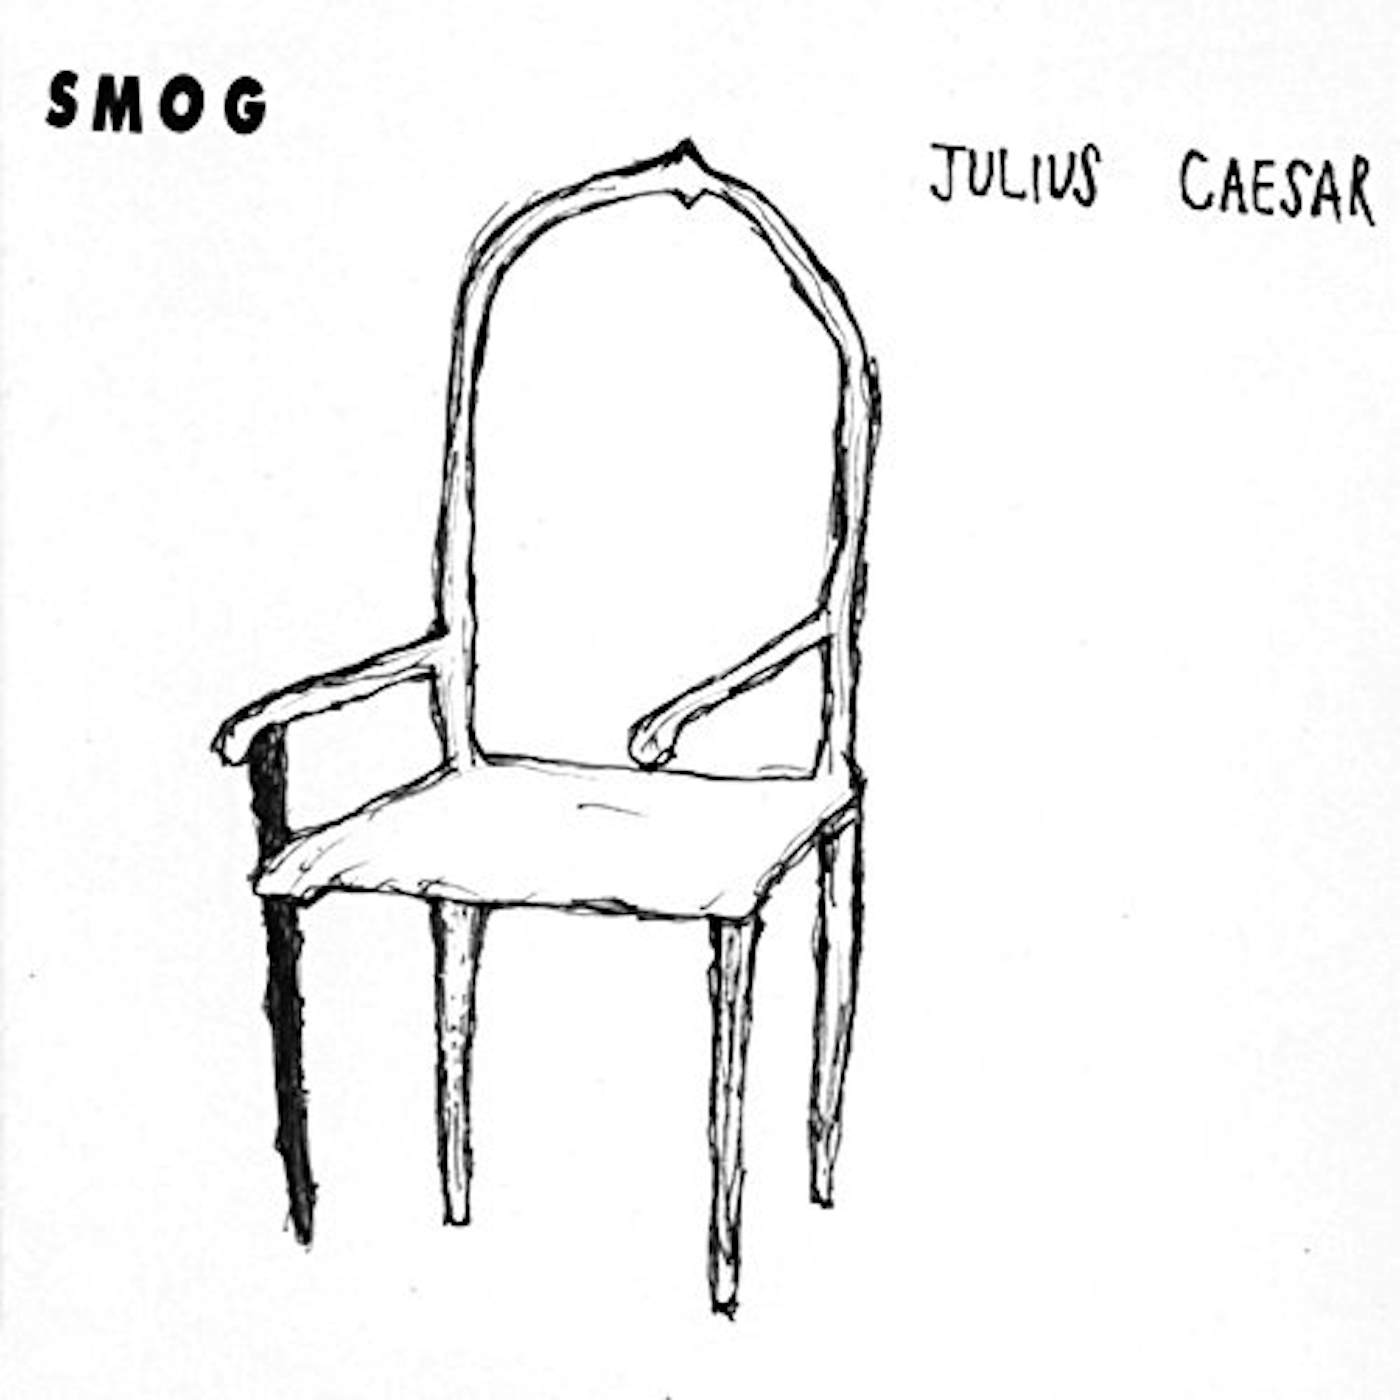 Smog Julius Caesar Vinyl Record